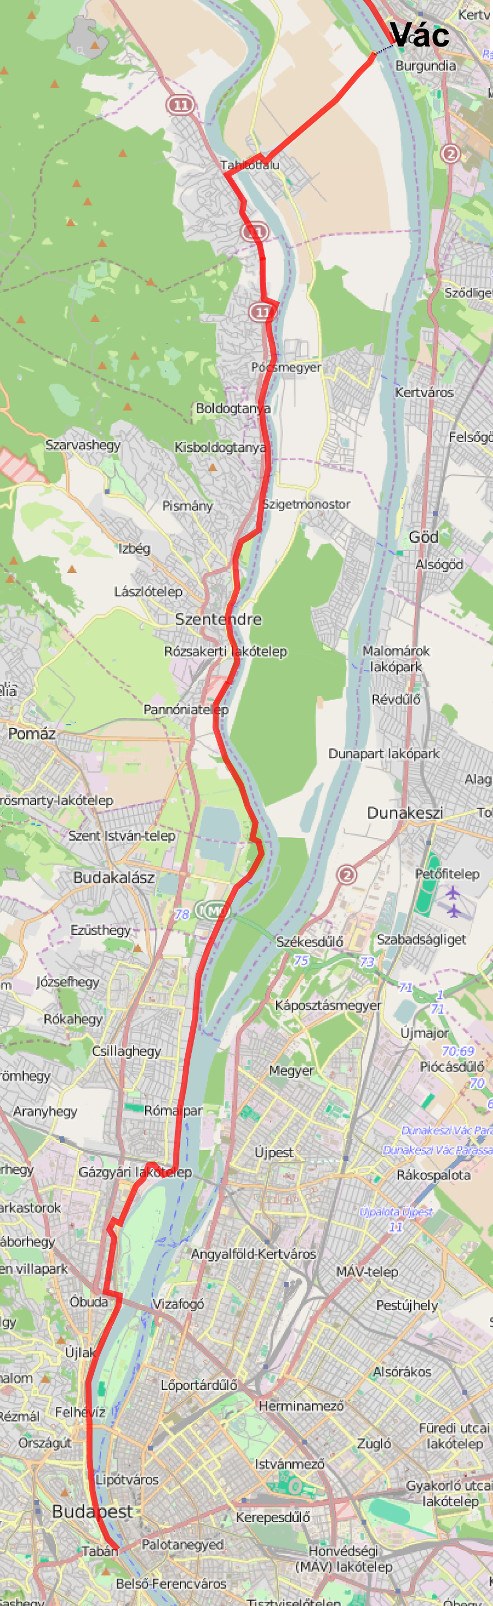 Der Donau-Radweg bei Budapest (Karte)